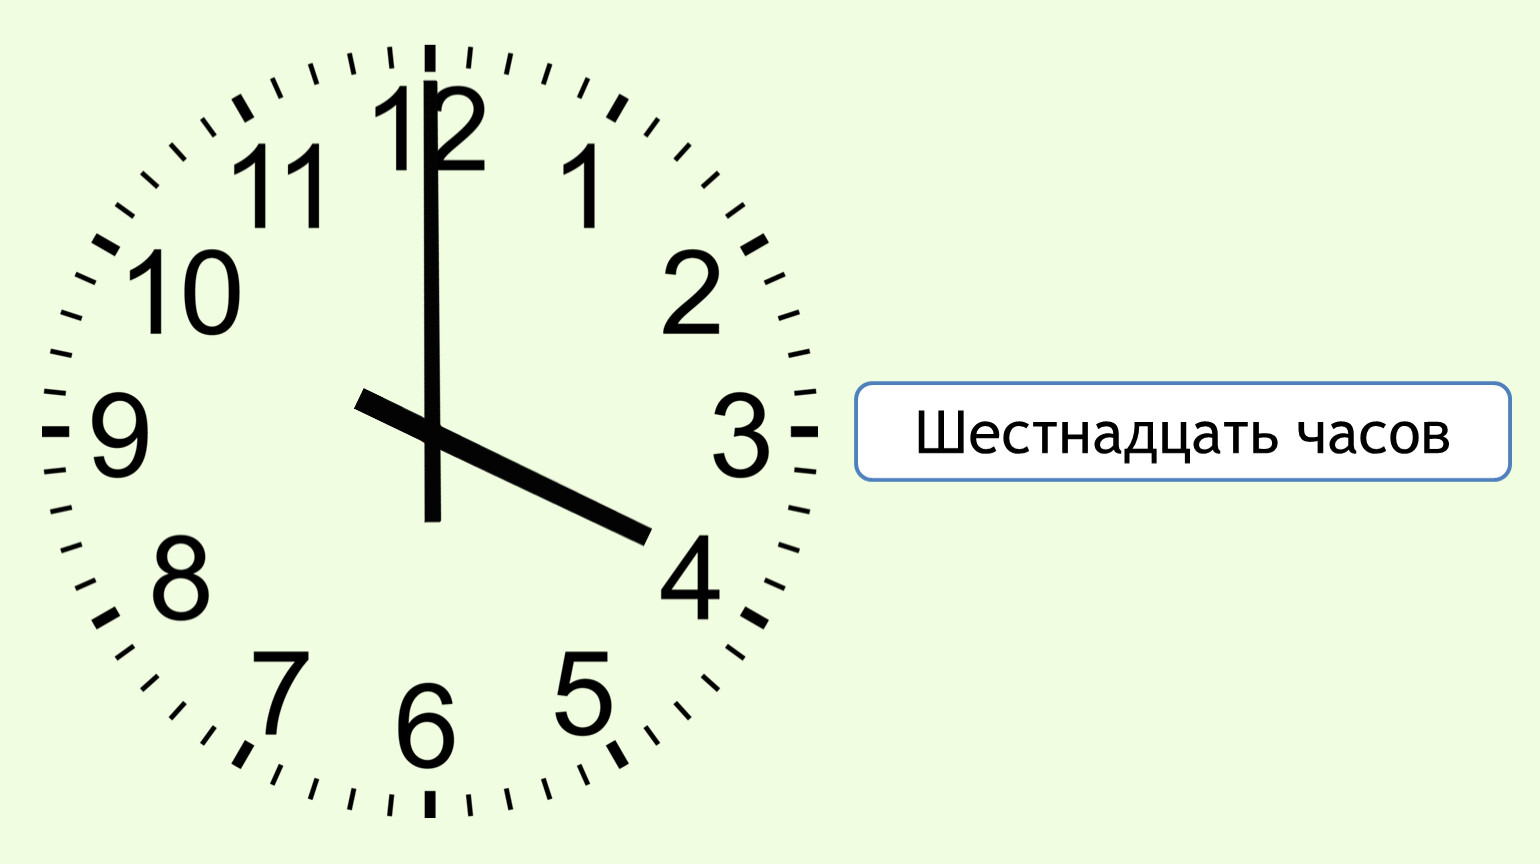 14 35 на часах. Часы 16:00. Циферблат на 16 часов. Часы показывают 4 часа. 16 Часов на часах.